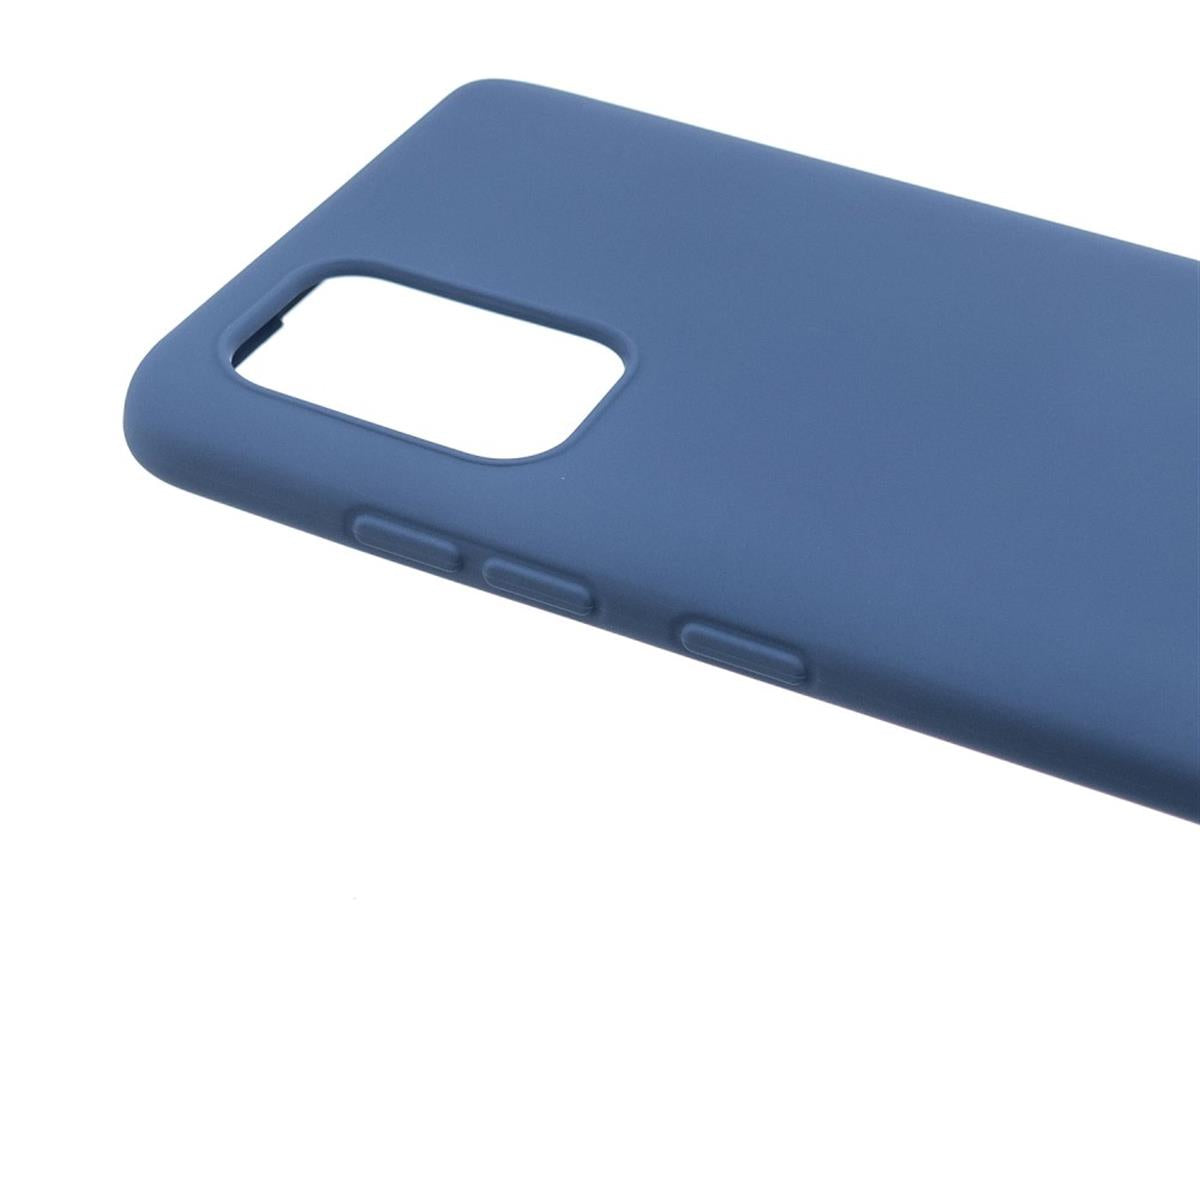 Hülle für Samsung Galaxy A52/A52 5G/A52s 5G Handy Silikon Case Cover Matt Blau